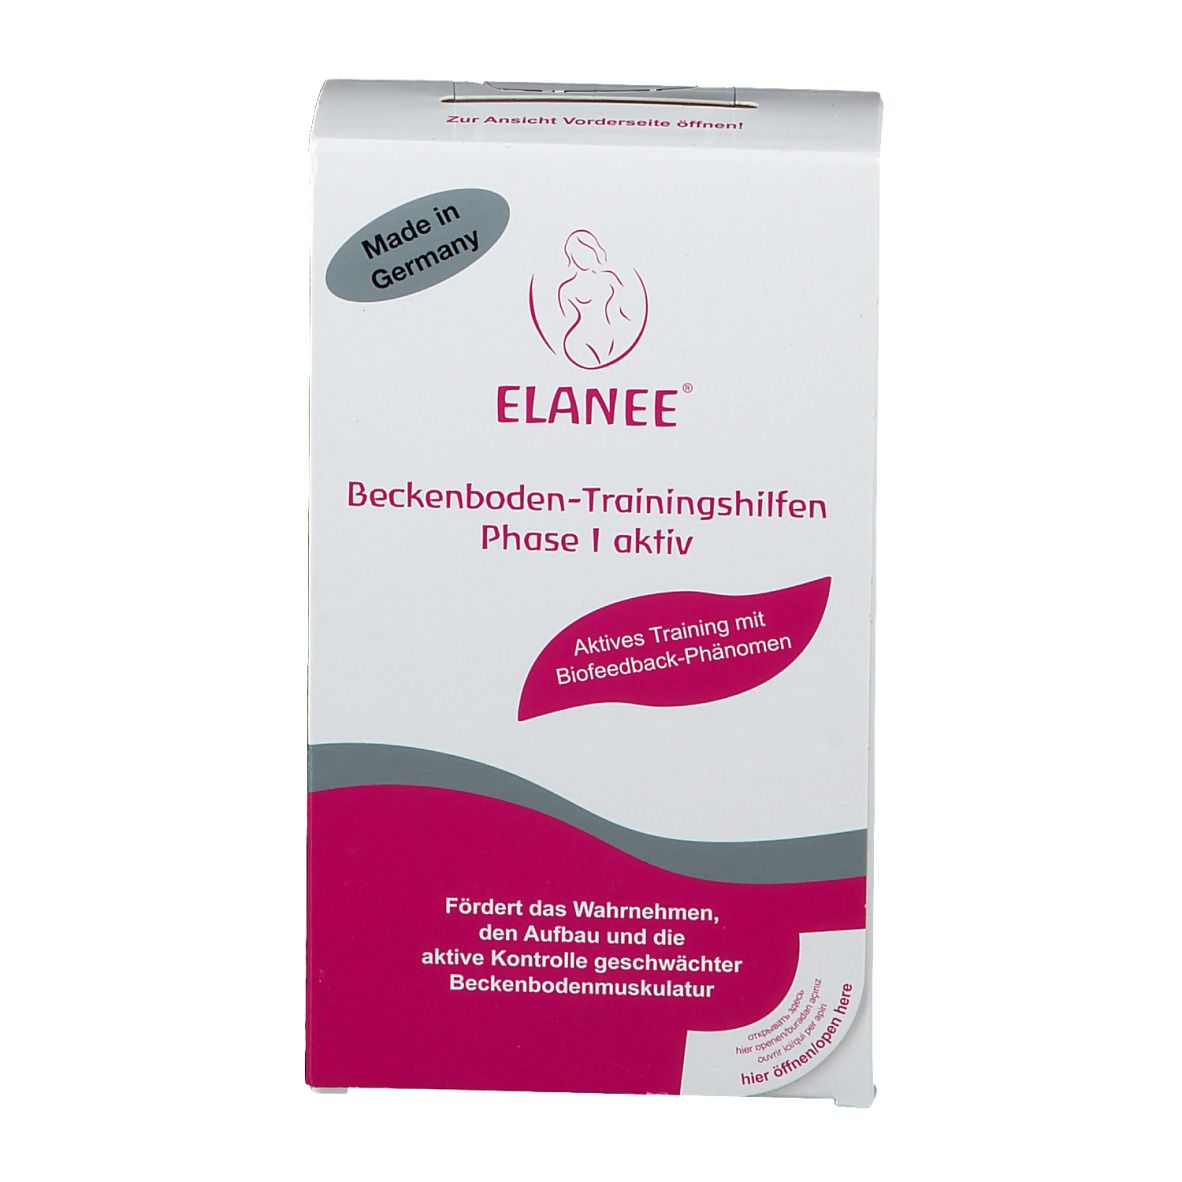 ELANEE® Beckenboden-Trainingshilfe Phase I aktiv